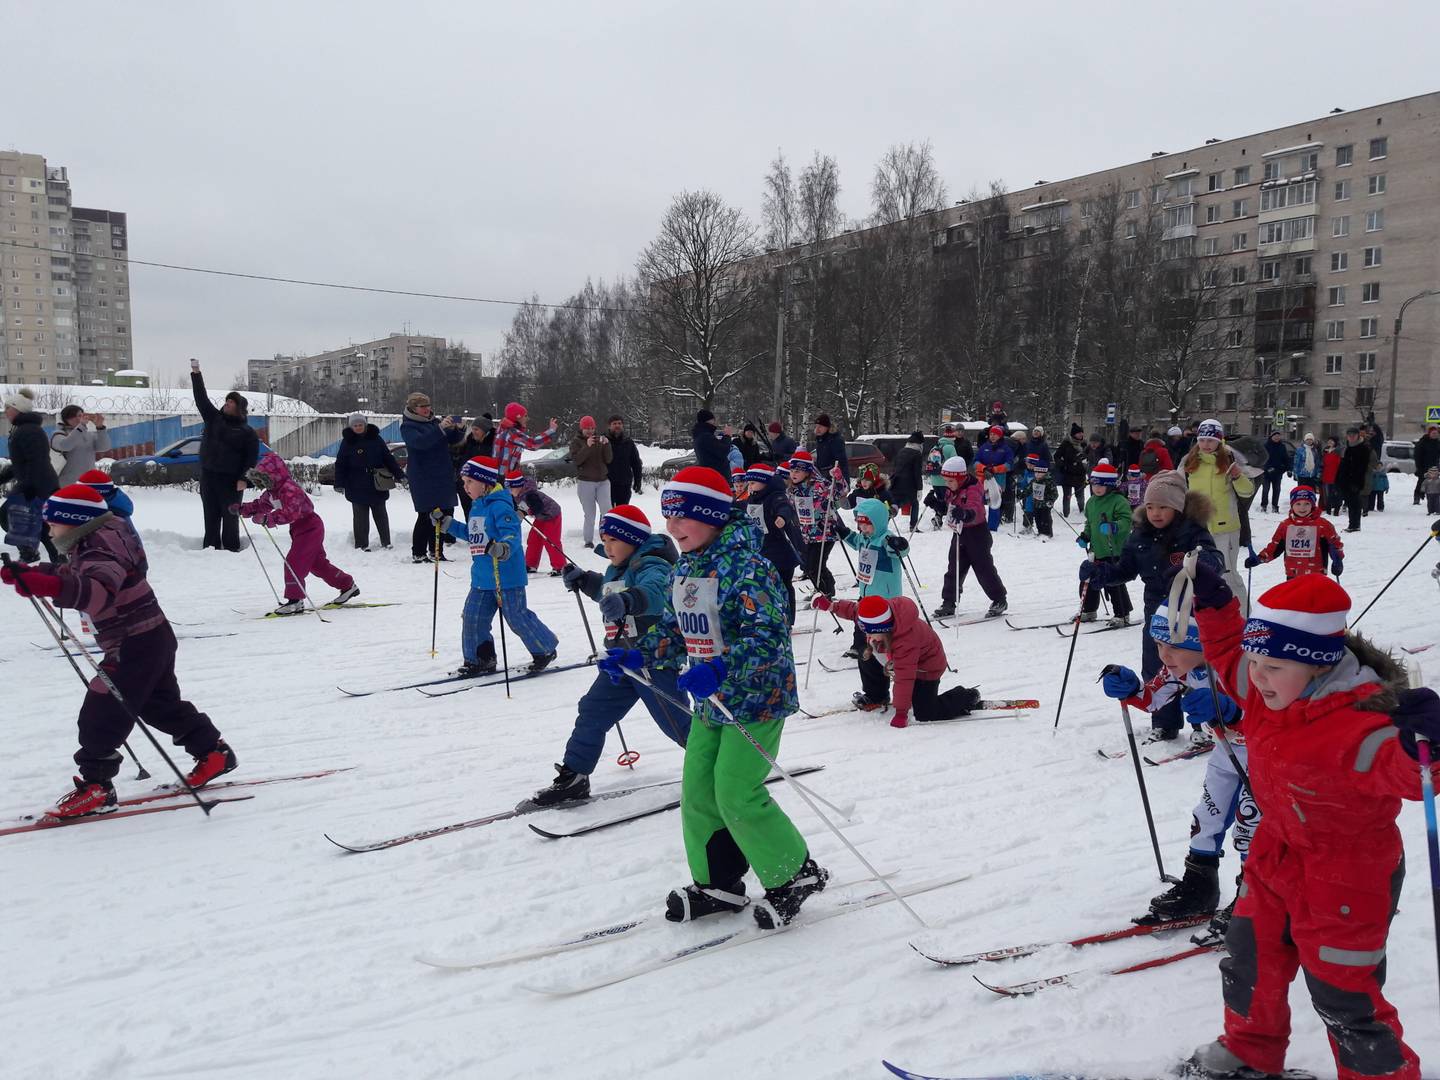 Забег юных лыжников. Пискаревский парк. Санкт-Петербург